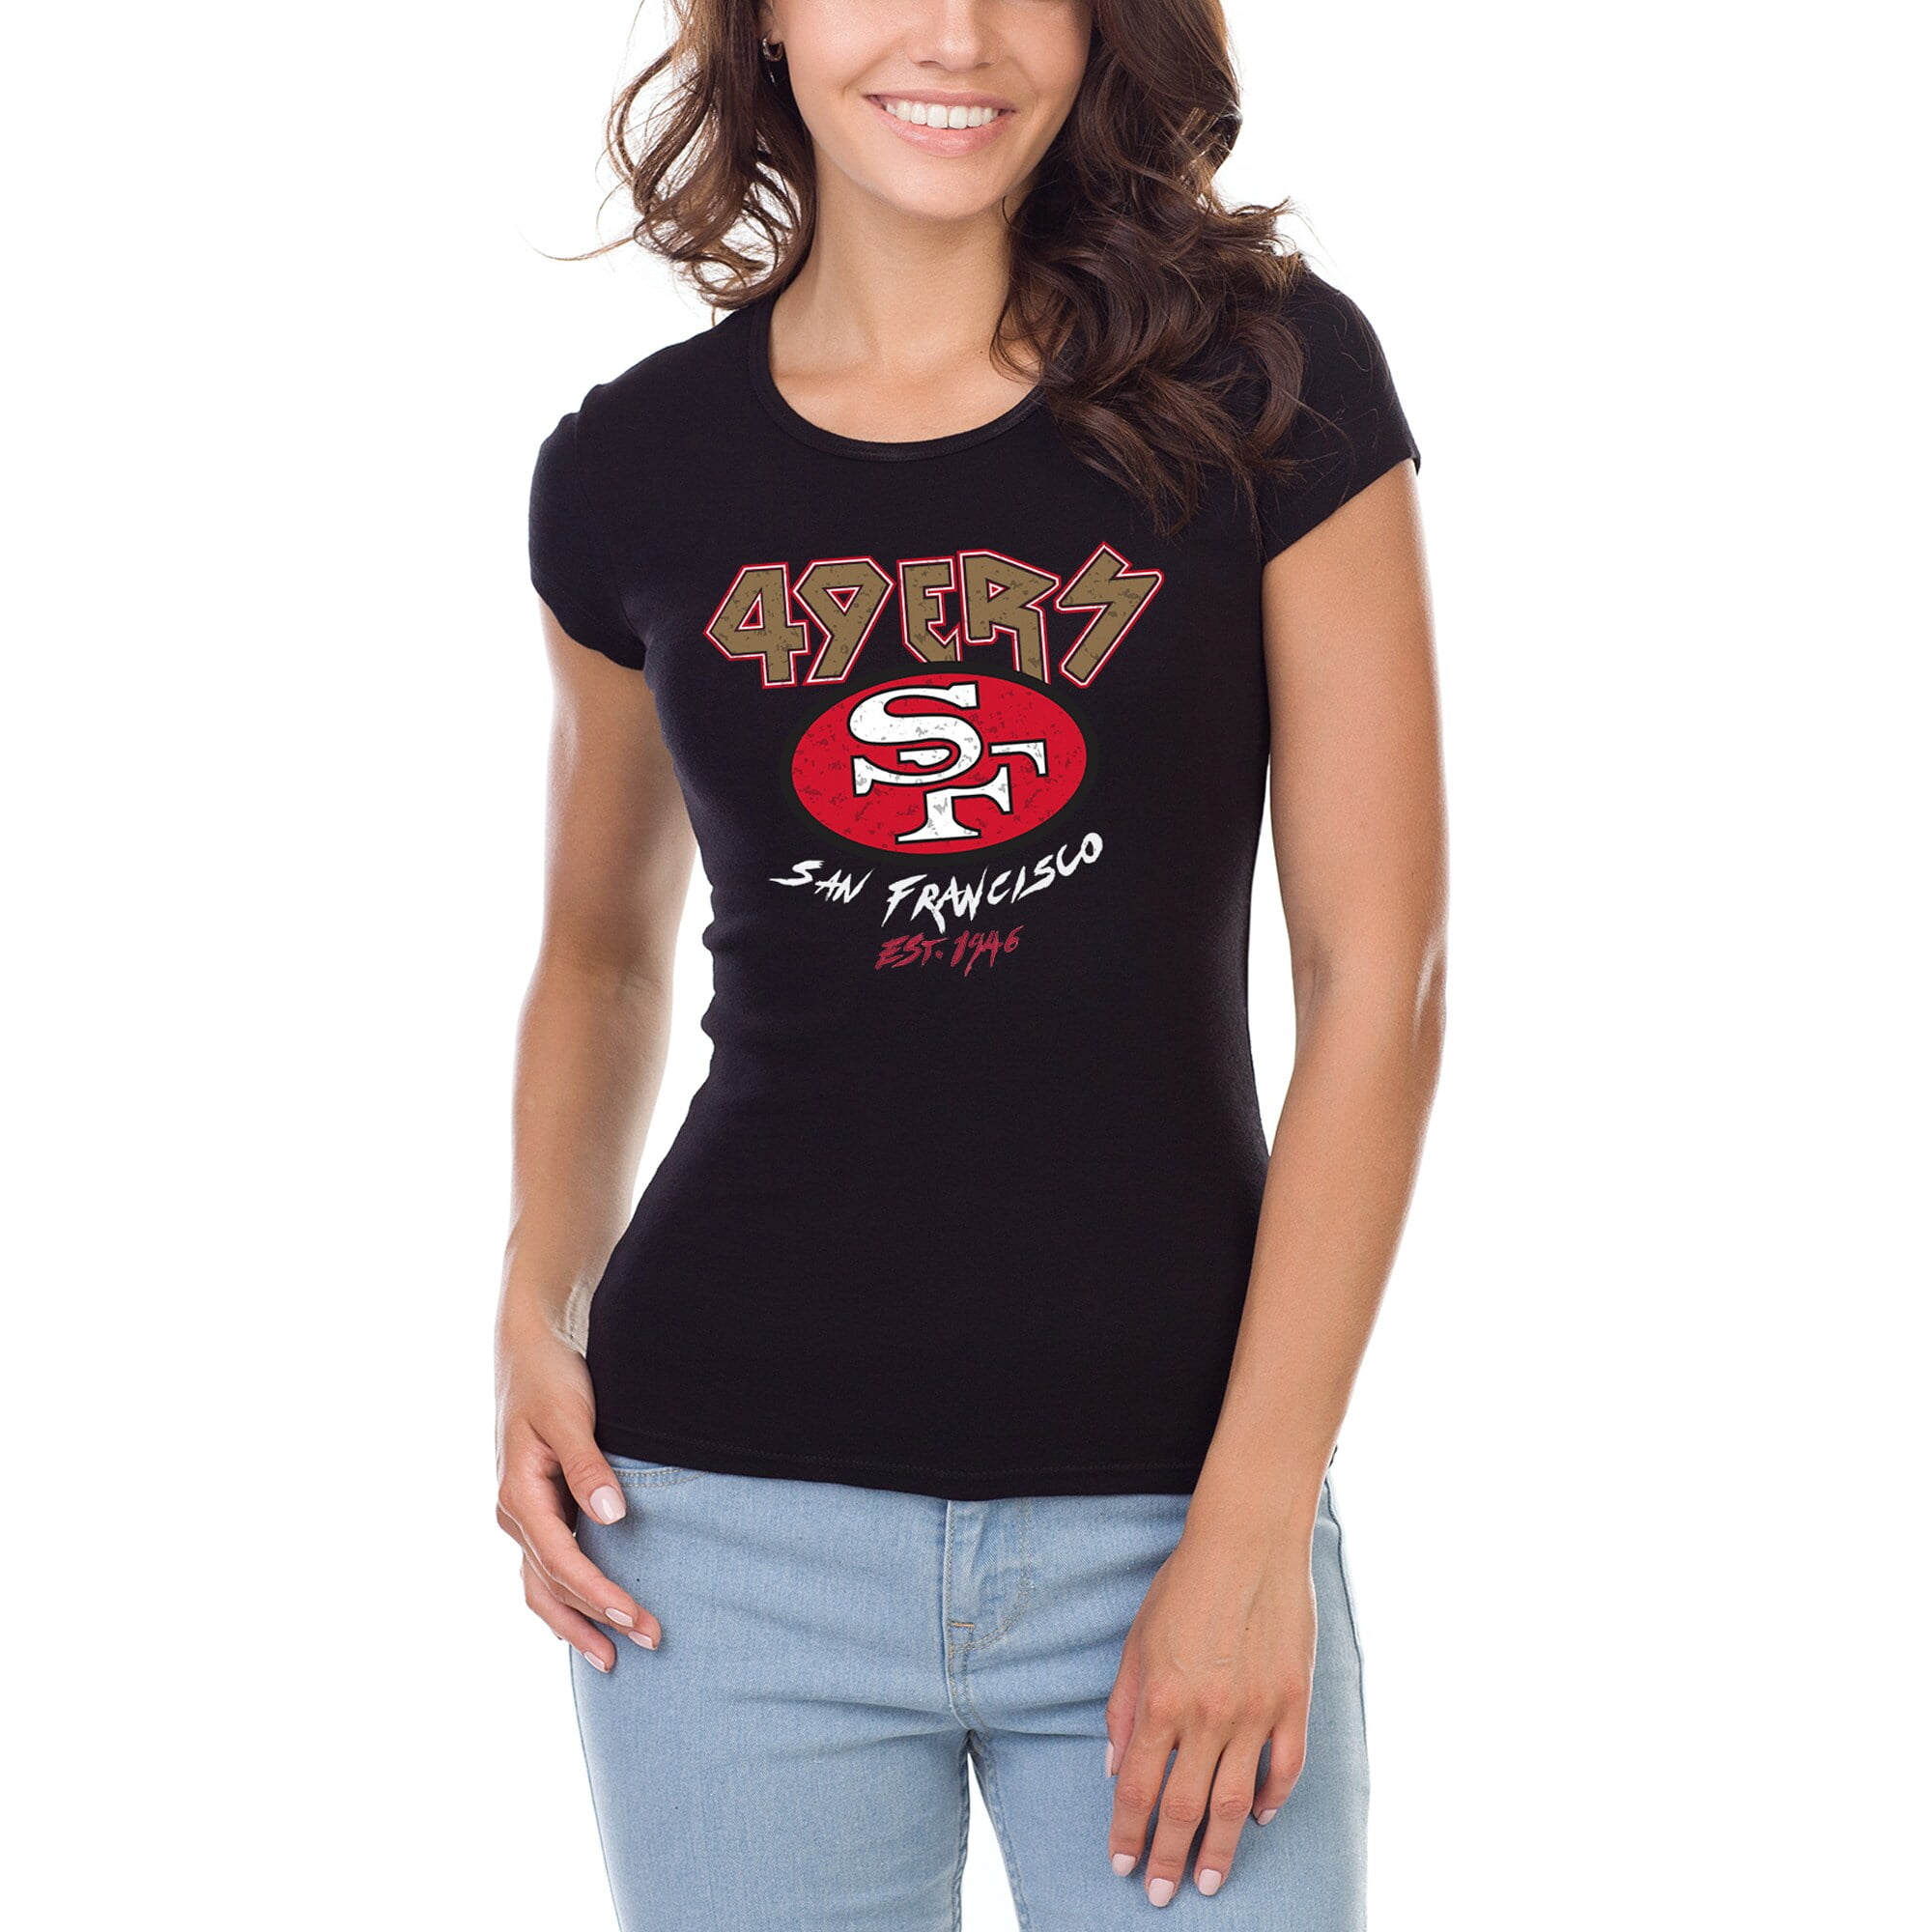 49ers women's t shirts